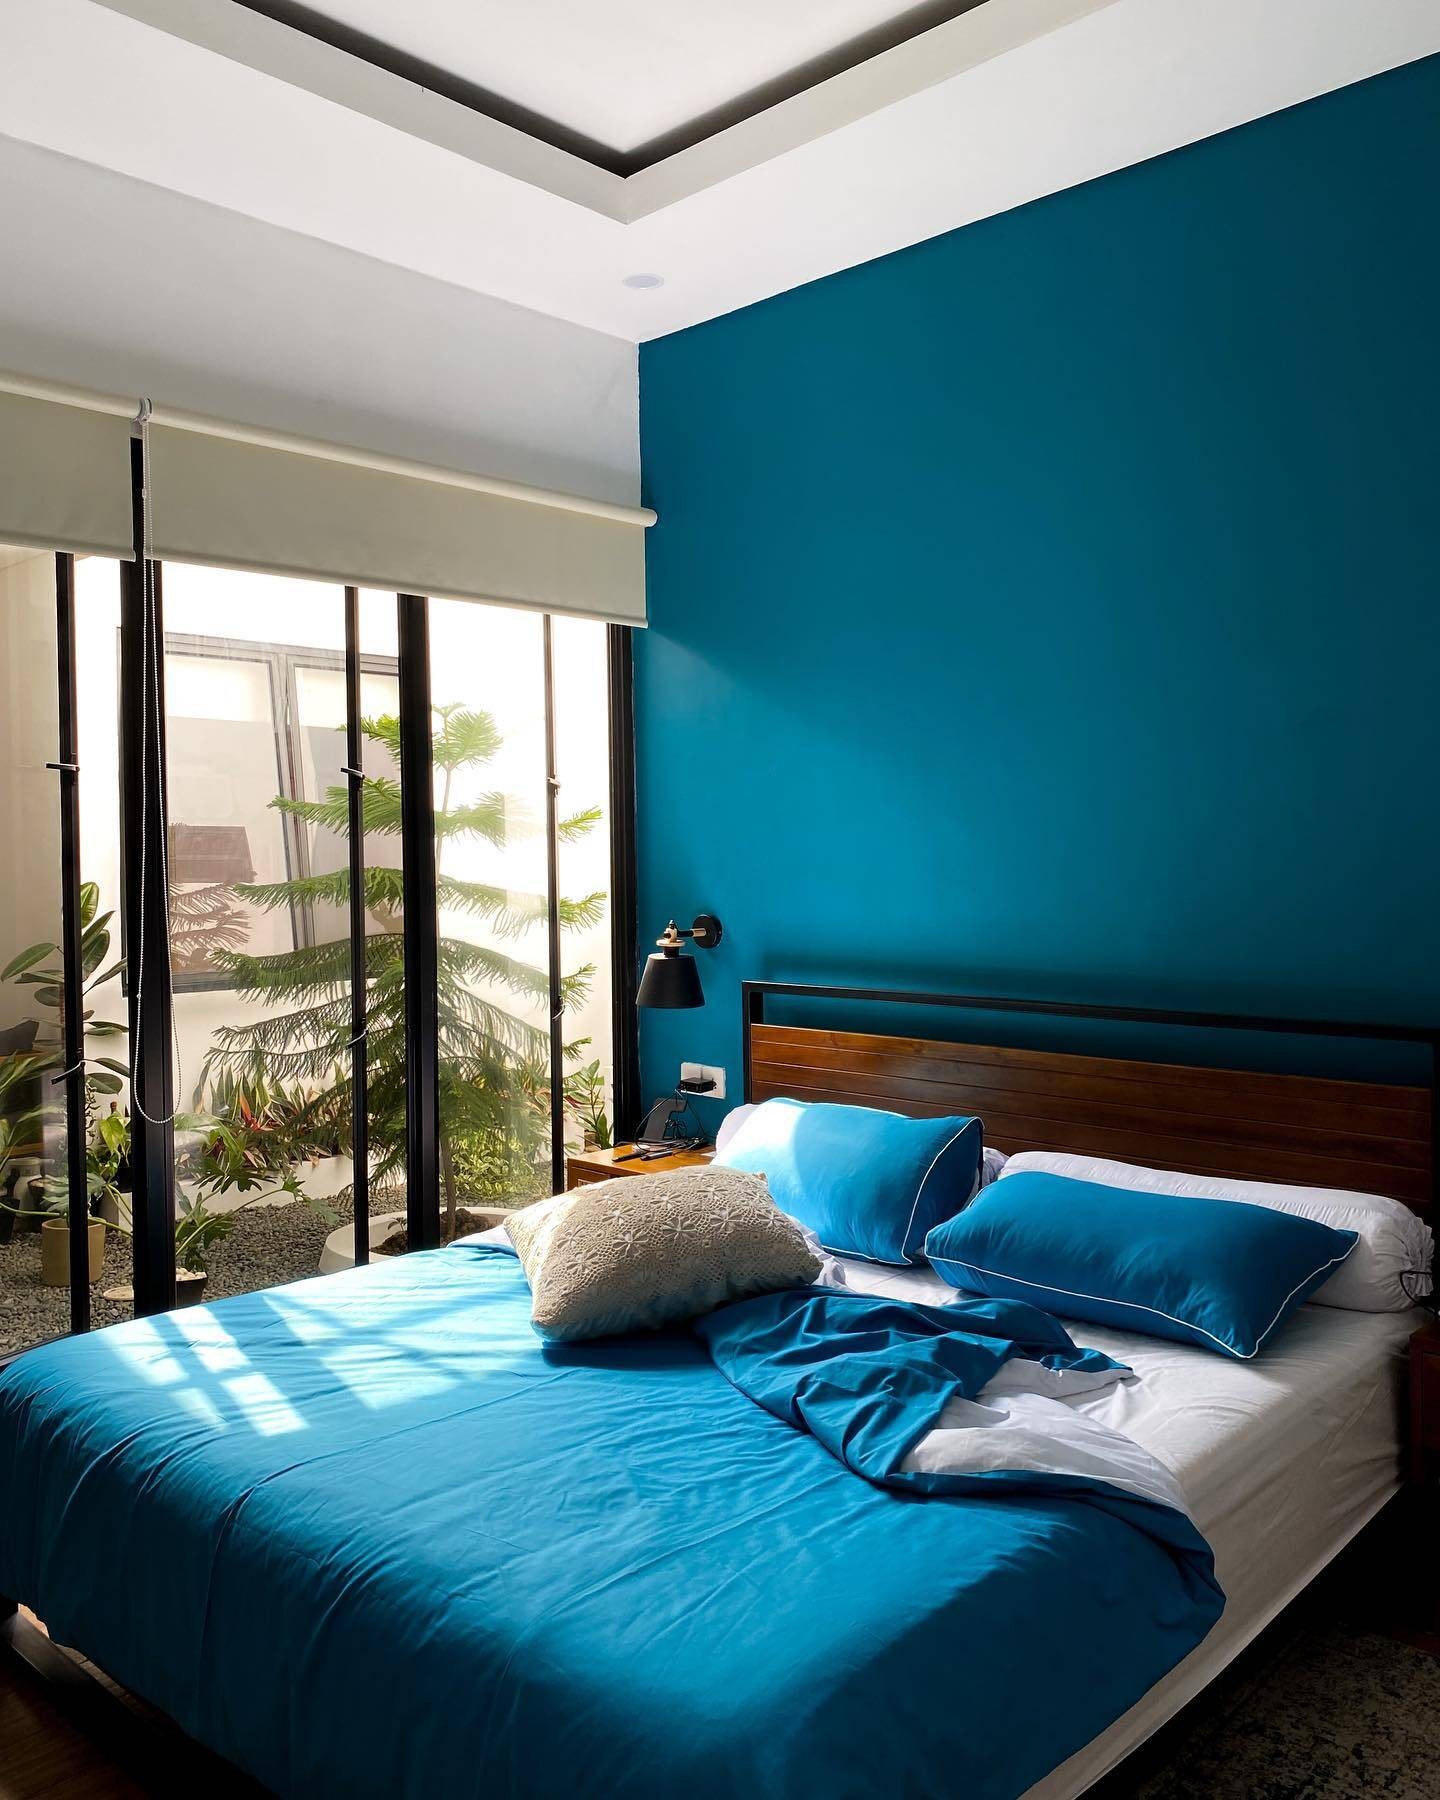 
Phòng ngủ ở tầng hai thiết kế hiện đại với màu xanh cổ vịt làm chủ đạo
